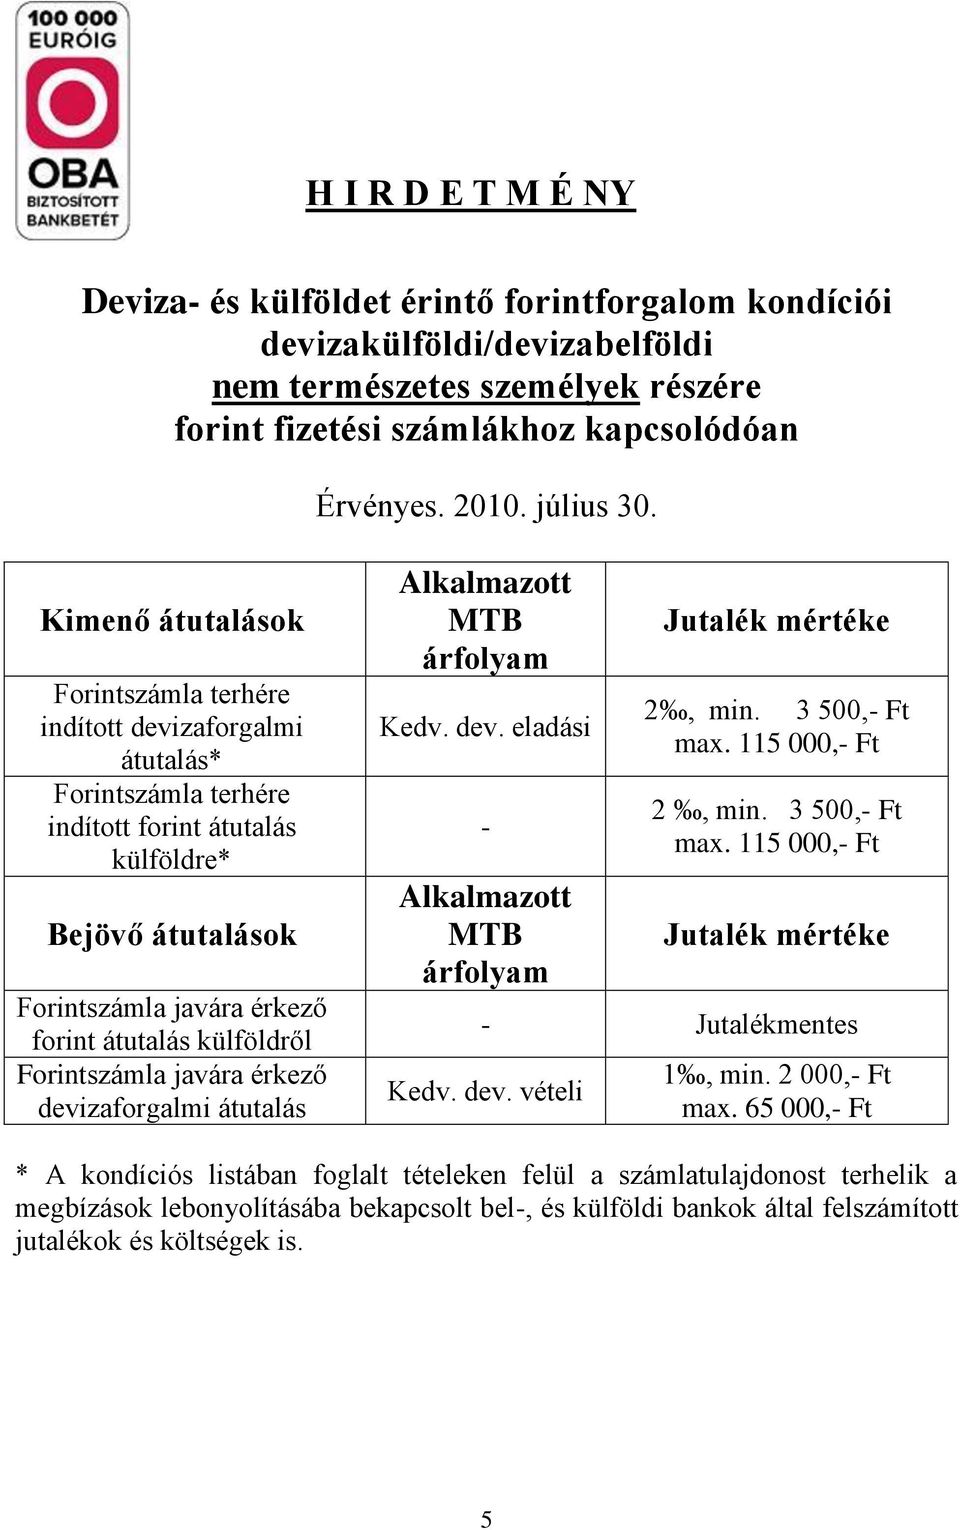 külföldről Forintszámla javára érkező devizaforgalmi átutalás Alkalmazott MTB árfolyam Kedv. dev. eladási - Alkalmazott MTB árfolyam Jutalék mértéke 2, min. 3 max.